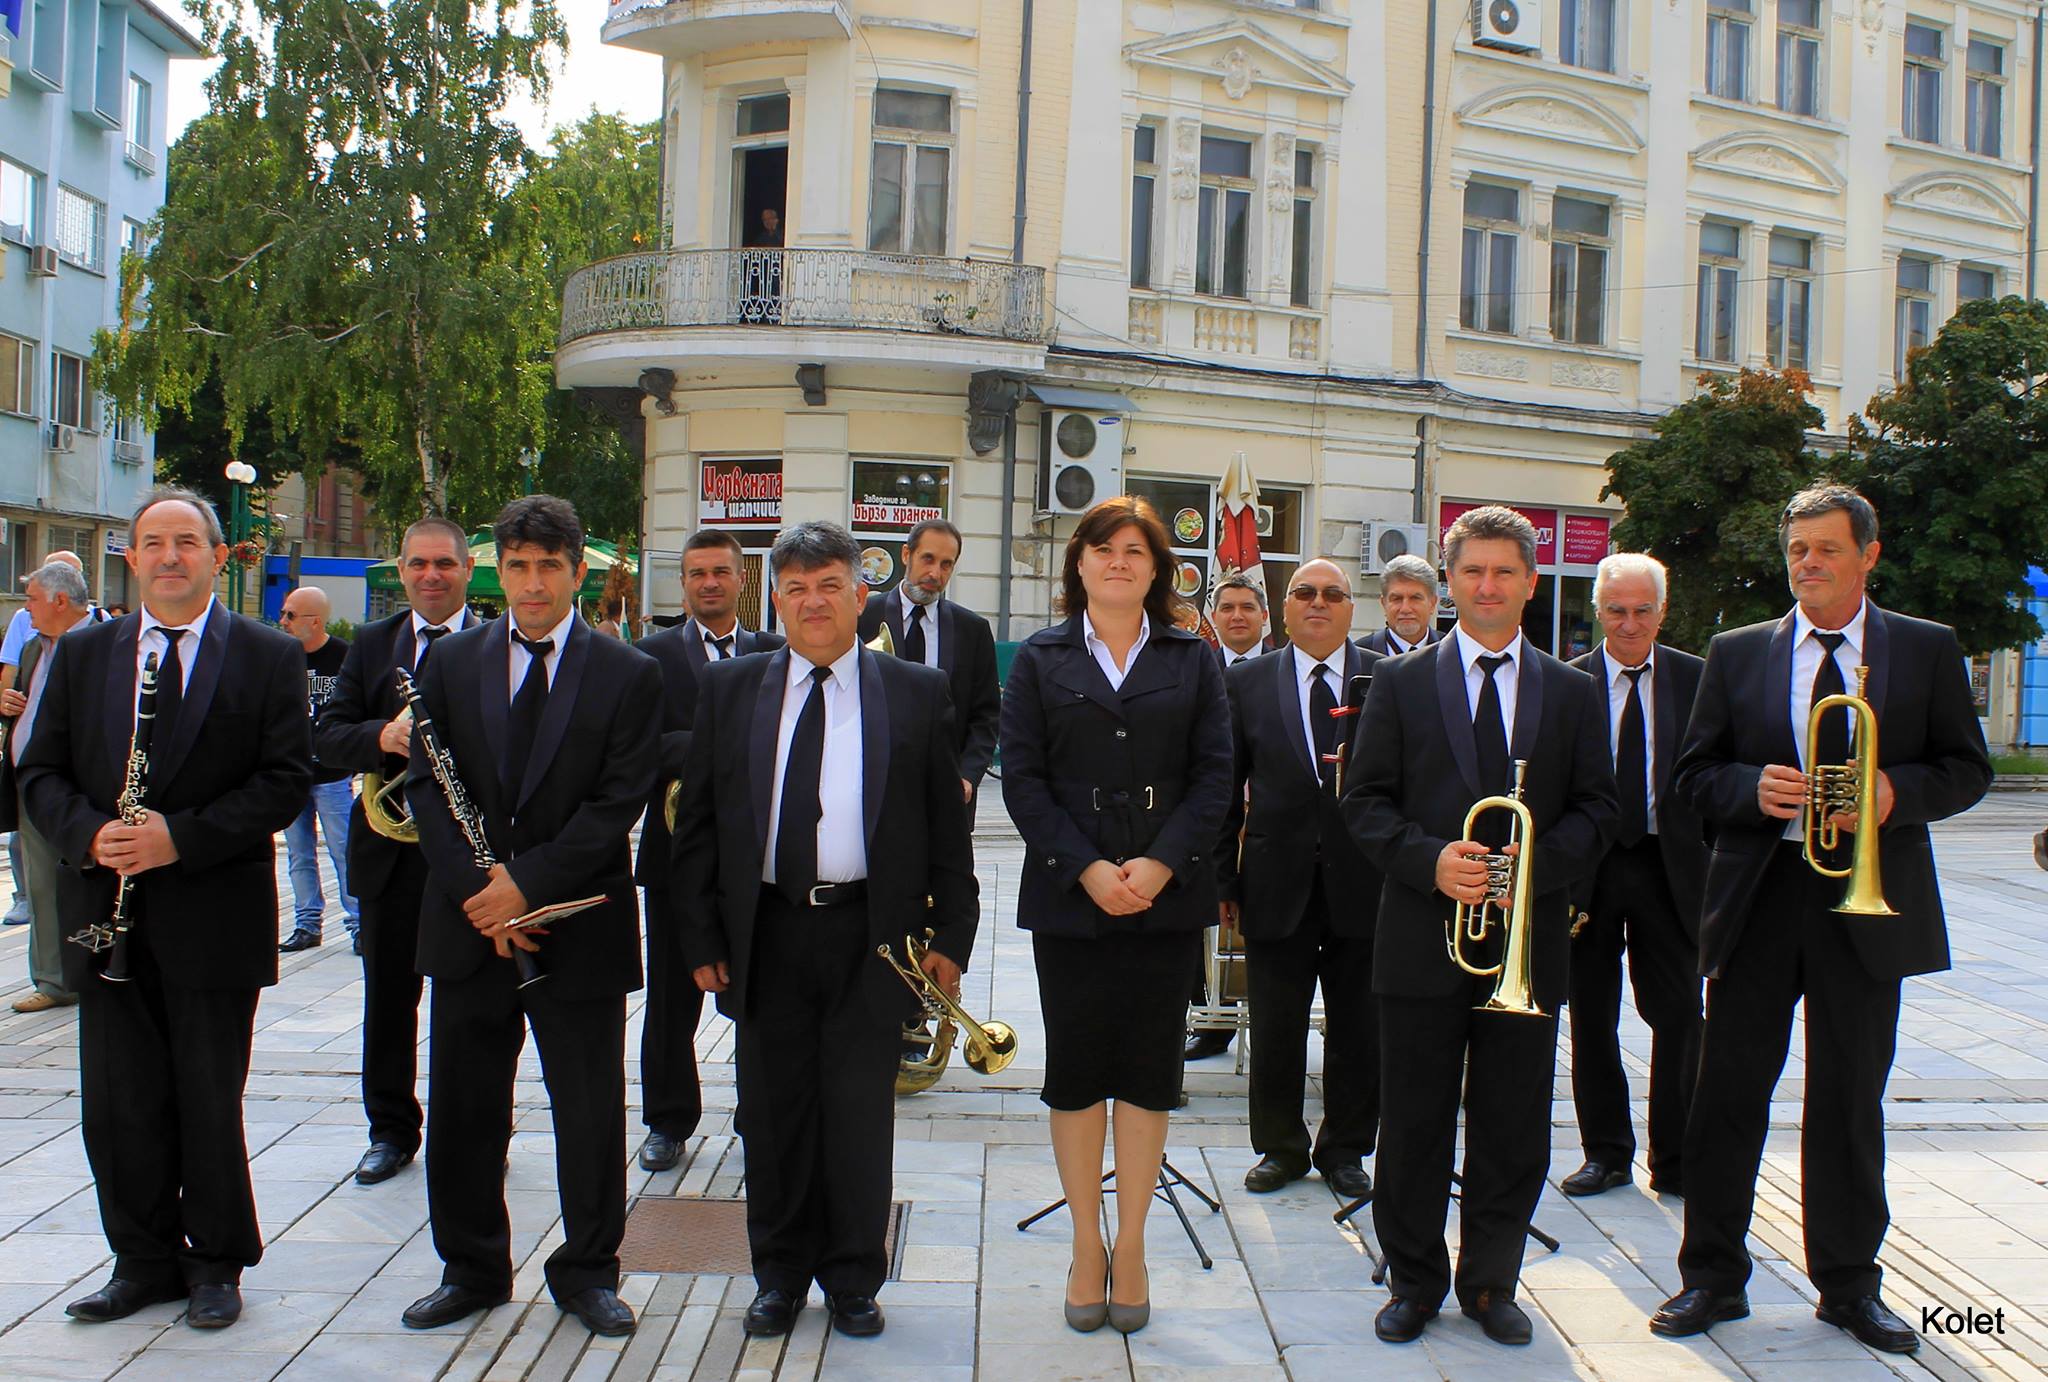 Градският духов оркестър на Видин отбелязва 60-годишнината си с пищен концерт